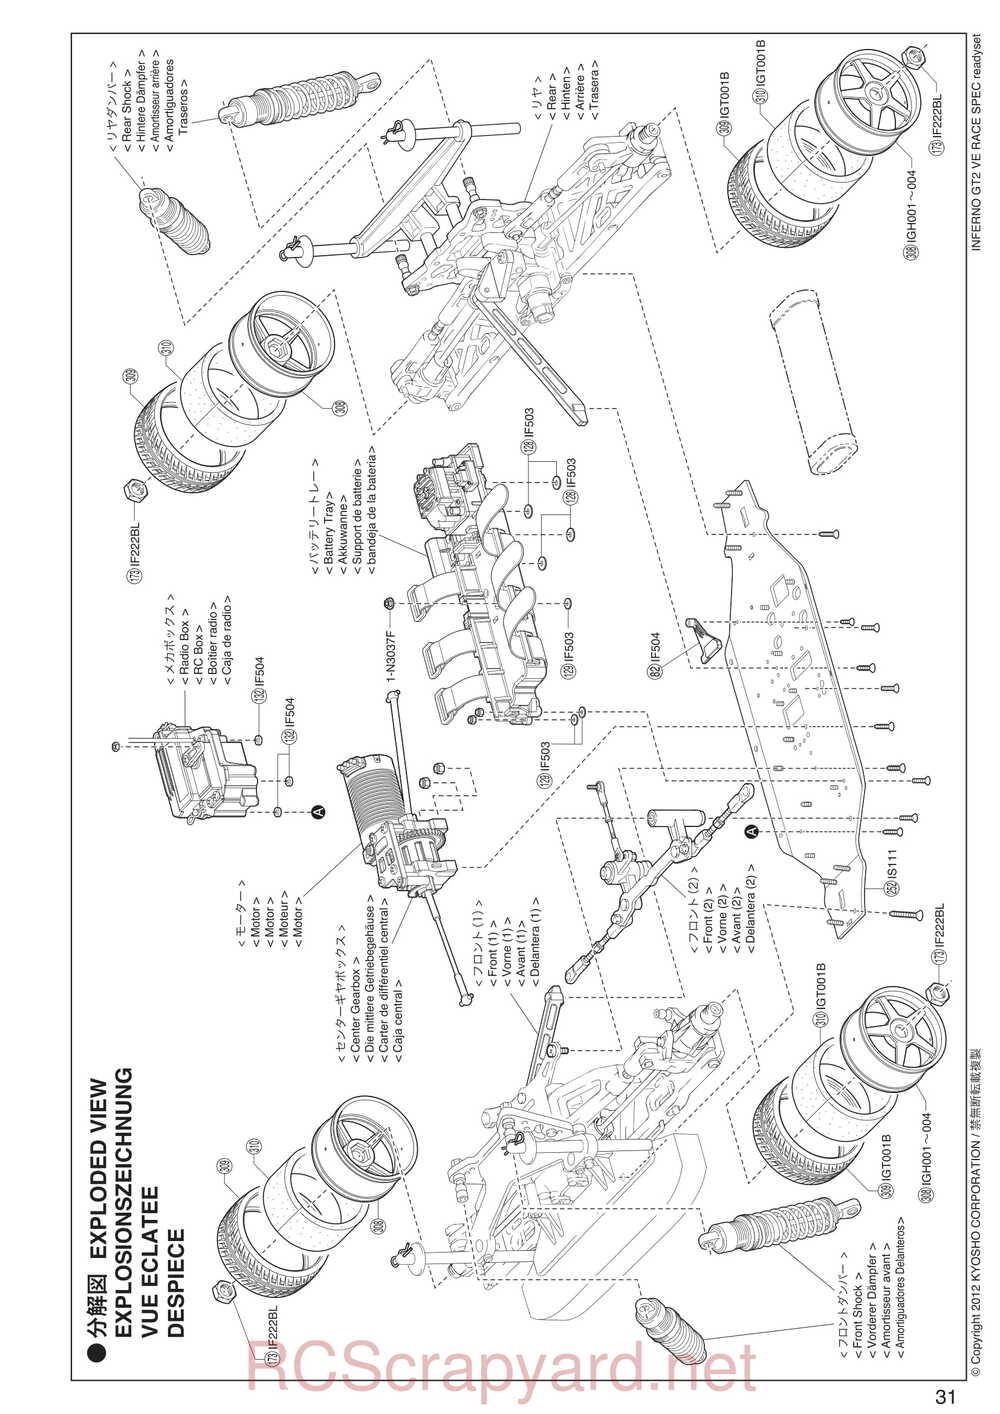 Kyosho - 30935 - Inferno GT2 VE Race-Spec - Manual - Page 31